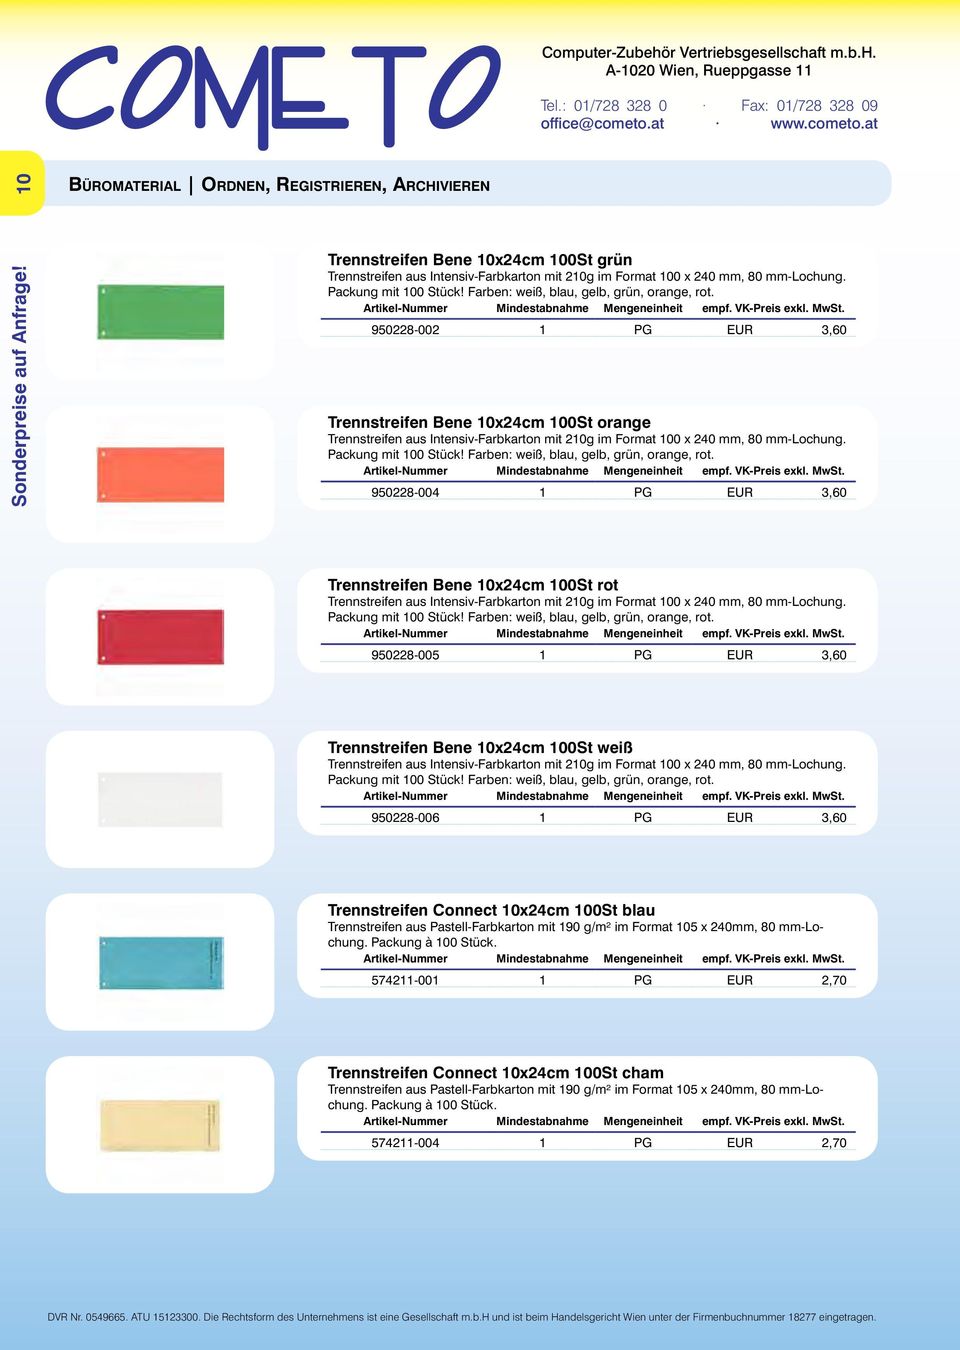 Farben: weiß, blau, gelb, grün, orange, rot. 950228-004 1 PG EUR 3,60 Trennstreifen Bene 10x24cm 100St rot Trennstreifen aus Intensiv-Farbkarton mit 210g im Format 100 x 240 mm, 80 mm-lochung.